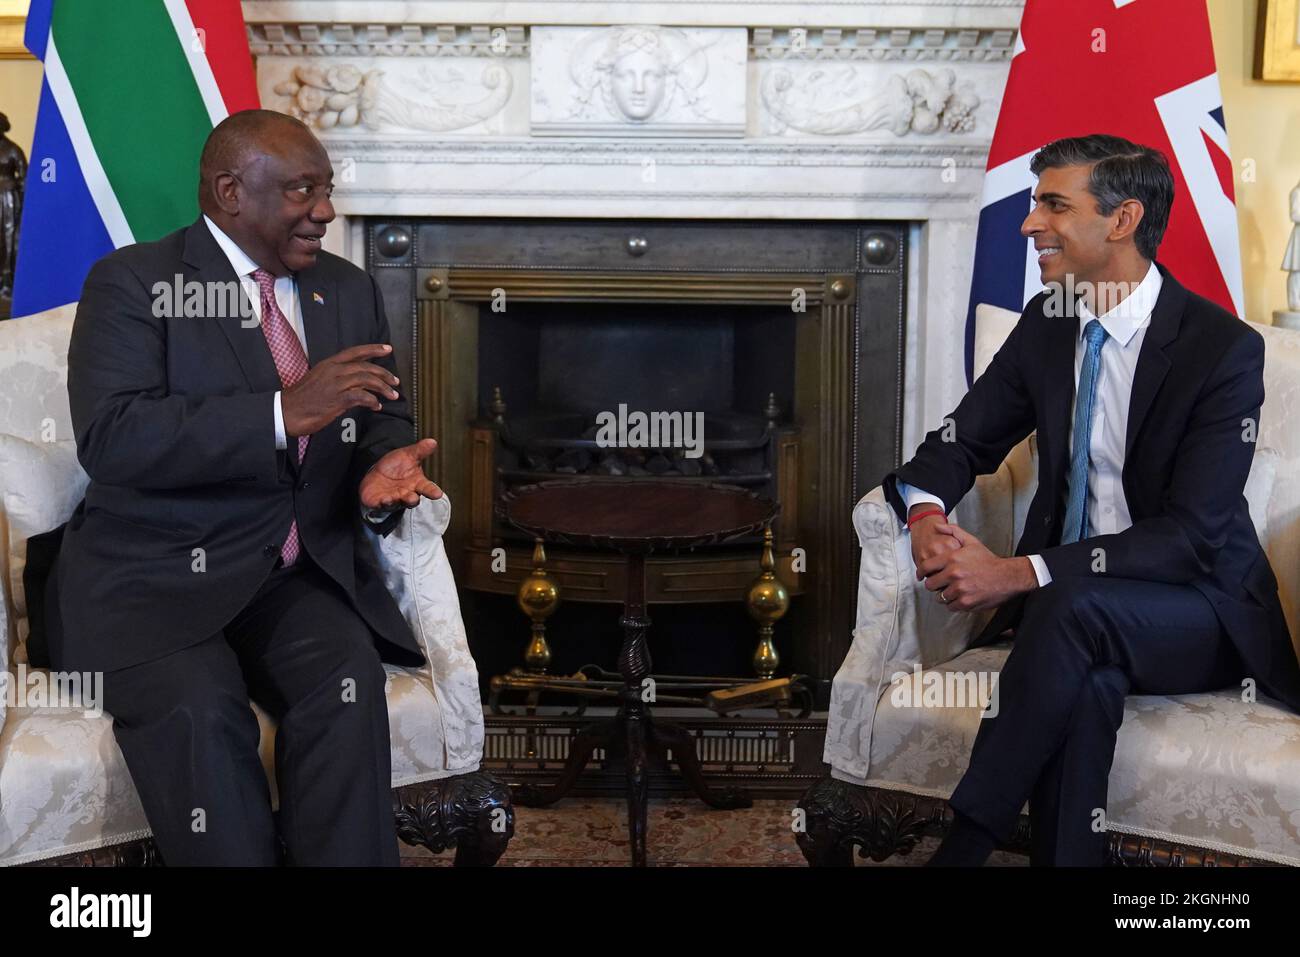 Le Premier ministre Rishi Sunak souhaite la bienvenue au président de l'Afrique du Sud, Cyril Ramaphosa, au 10 Downing Street, à Londres, avant une réunion bilatérale au cours de sa visite d'État au Royaume-Uni. Date de la photo: Mercredi 23 novembre 2022. Banque D'Images